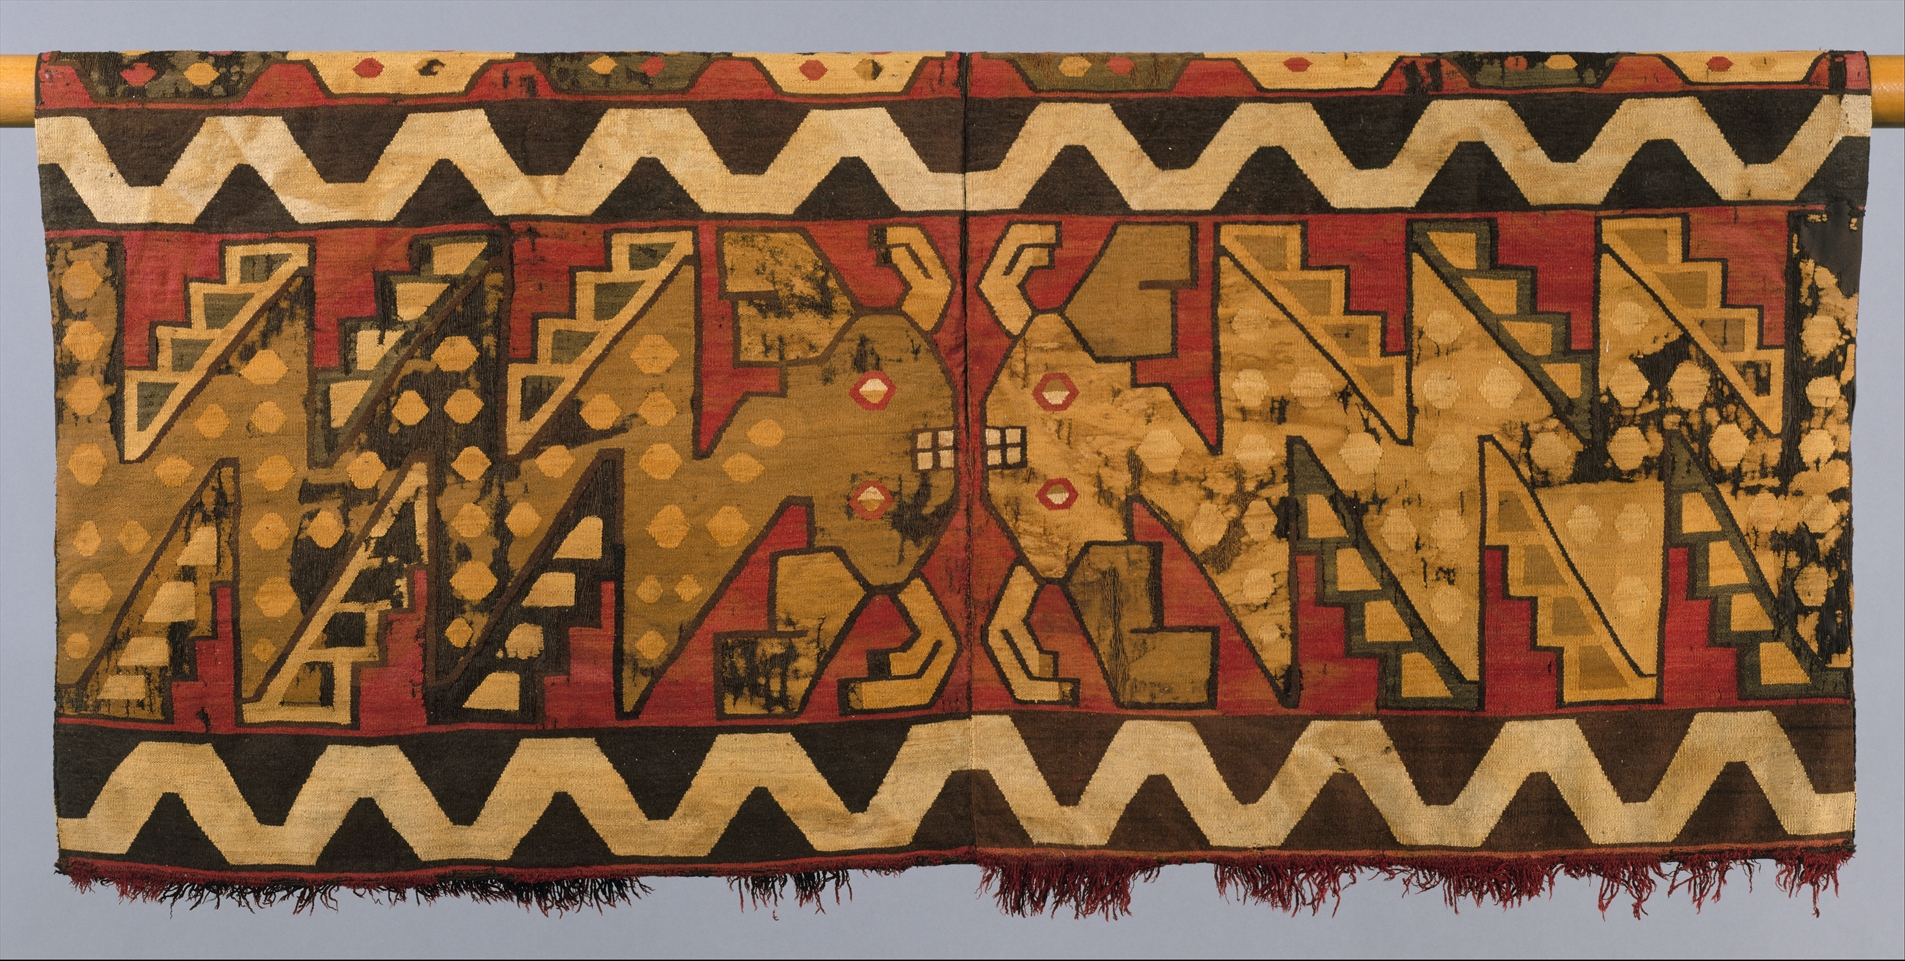 भिड़ते हुए कैटफ़िश का अंगरखा by Unknown Artist - ८०० - ८५० ई. - ५४.६ × १०९.९ से.मी. 